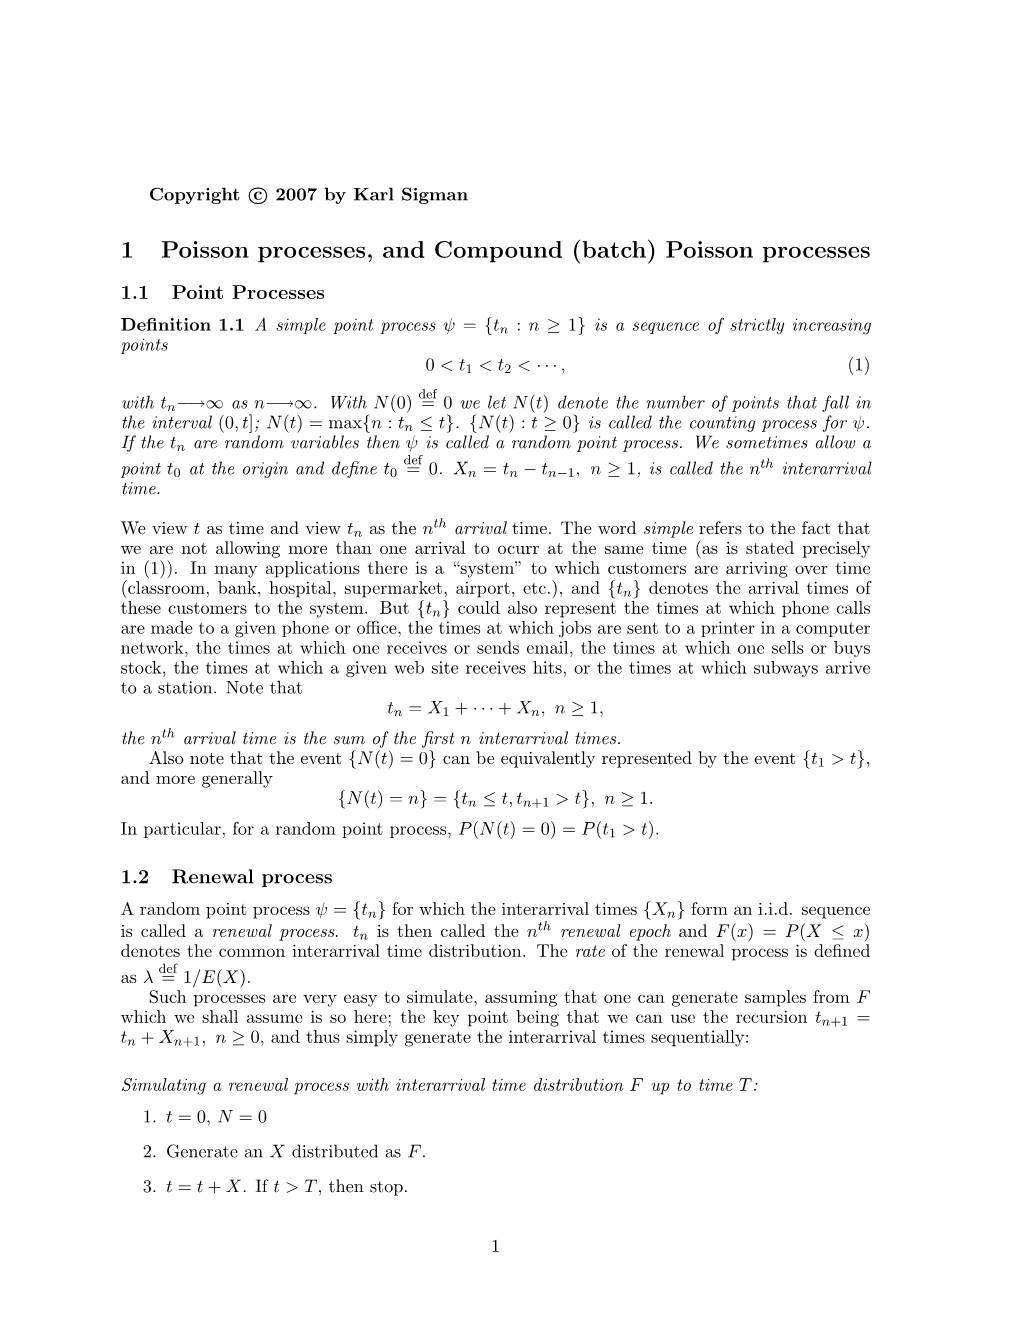 1 Poisson Processes, and Compound (Batch) Poisson Processes